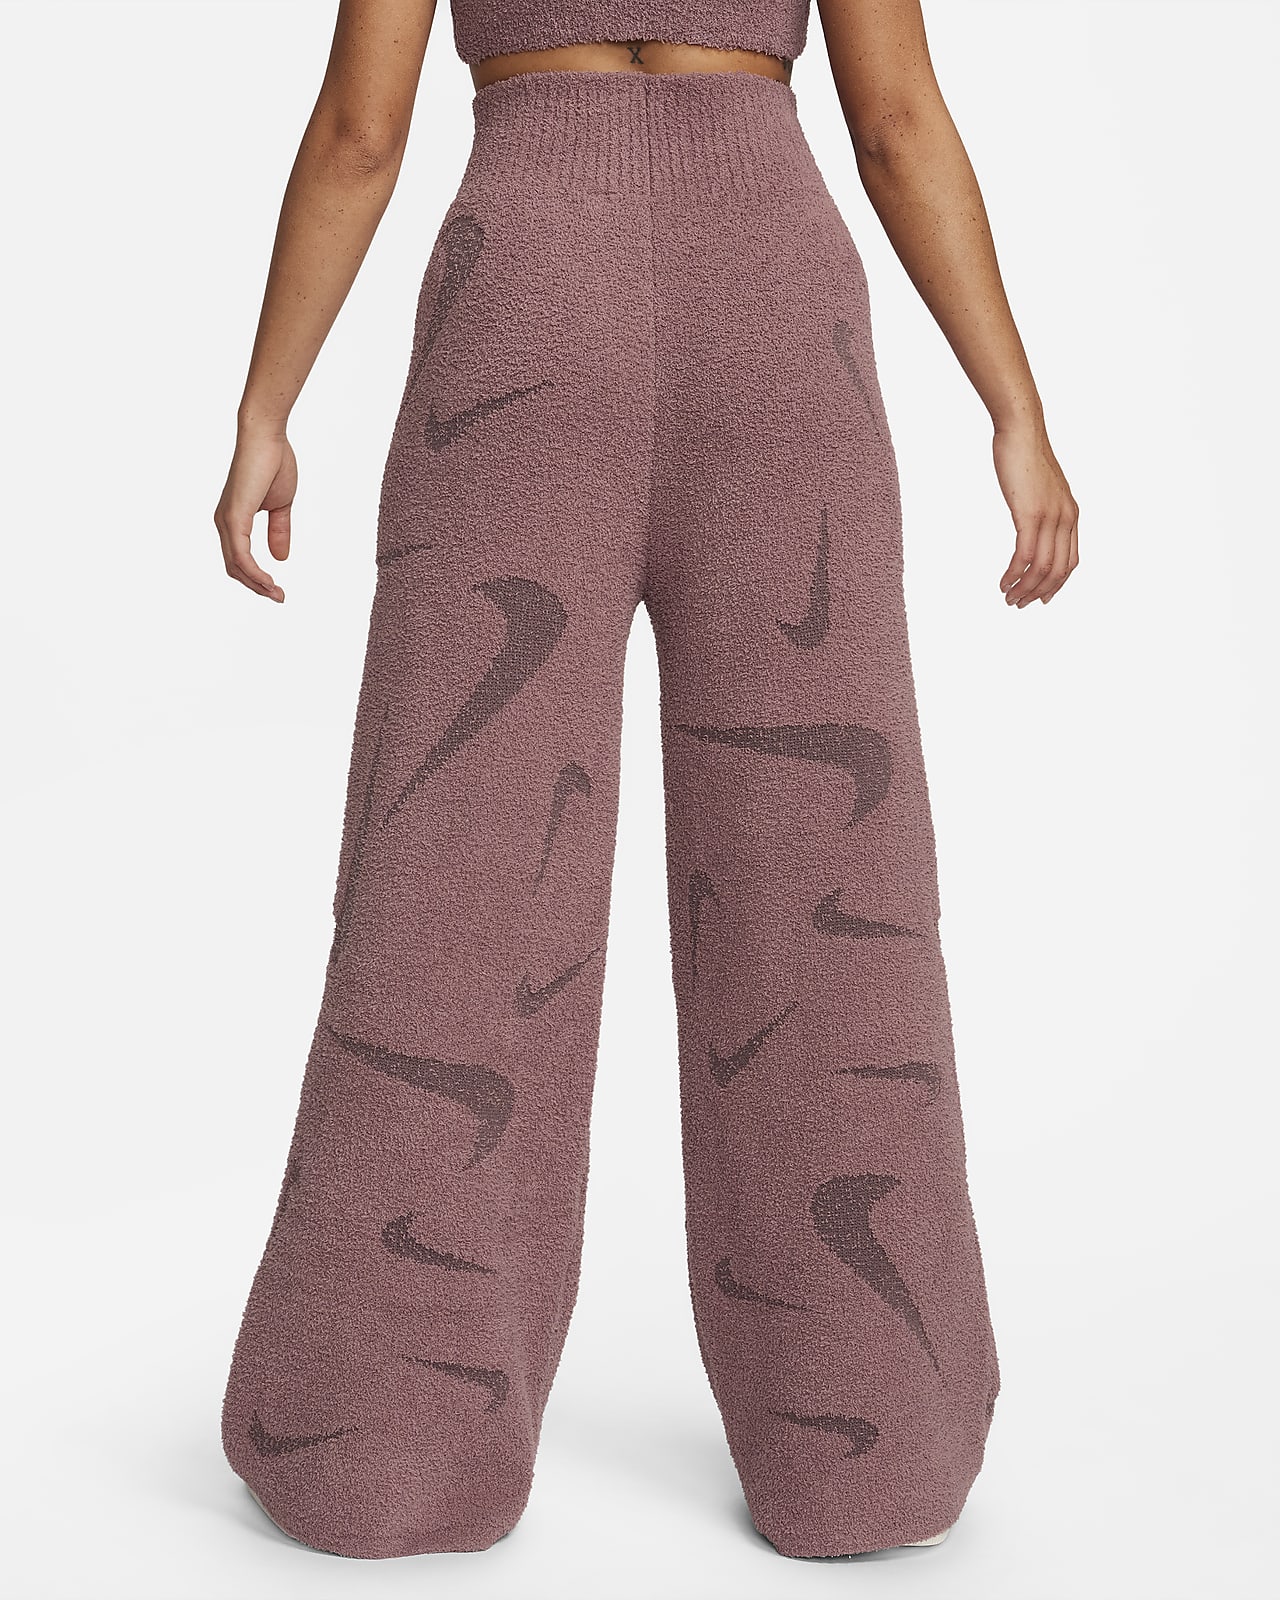 Nike Sportswear Phoenix Cozy Bouclé Women's High-Waisted Wide-Leg Knit Pants.